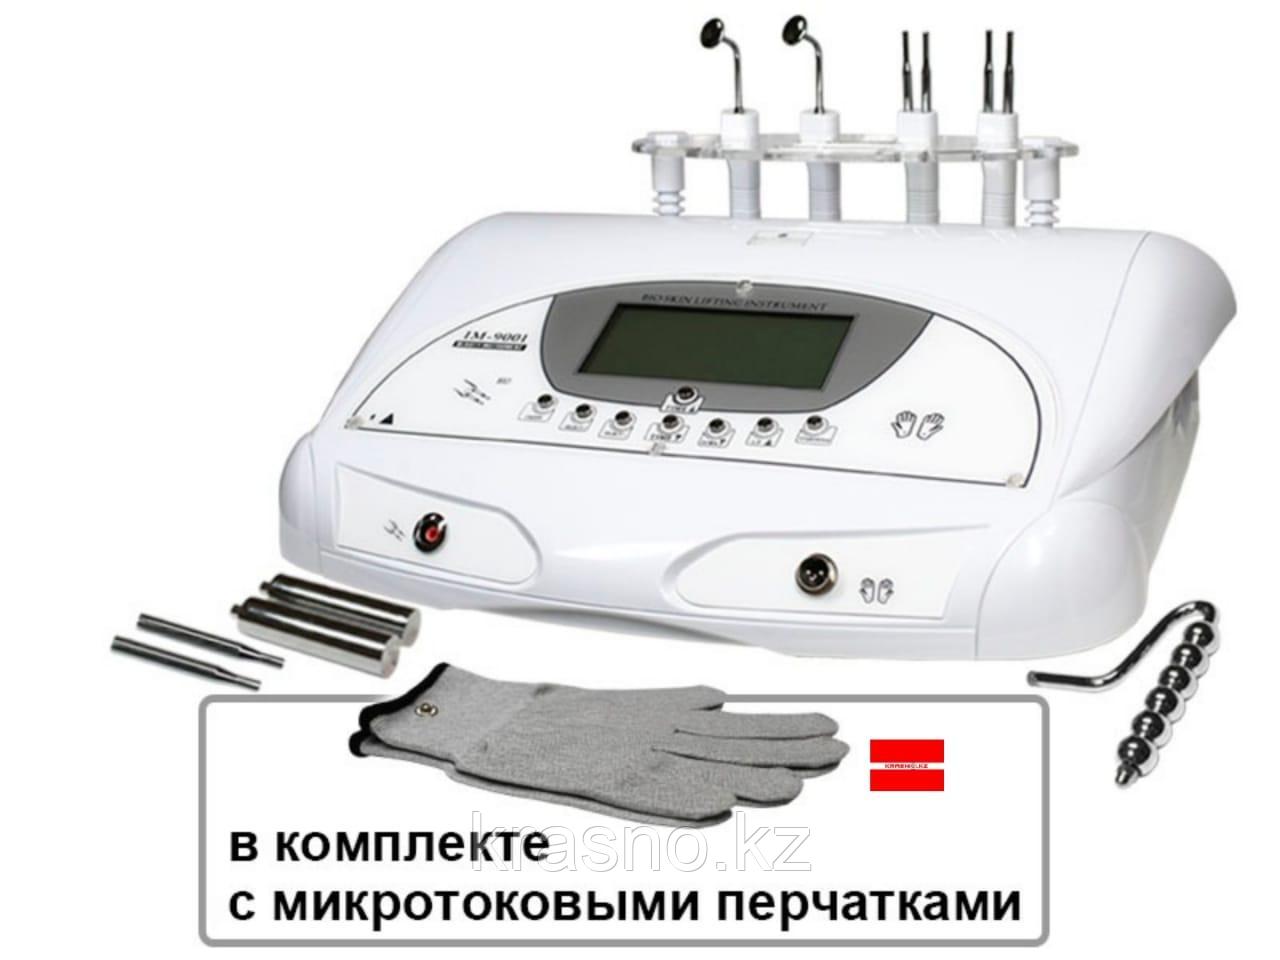 Профессиональный аппарат микротоковой терапии IM-9001